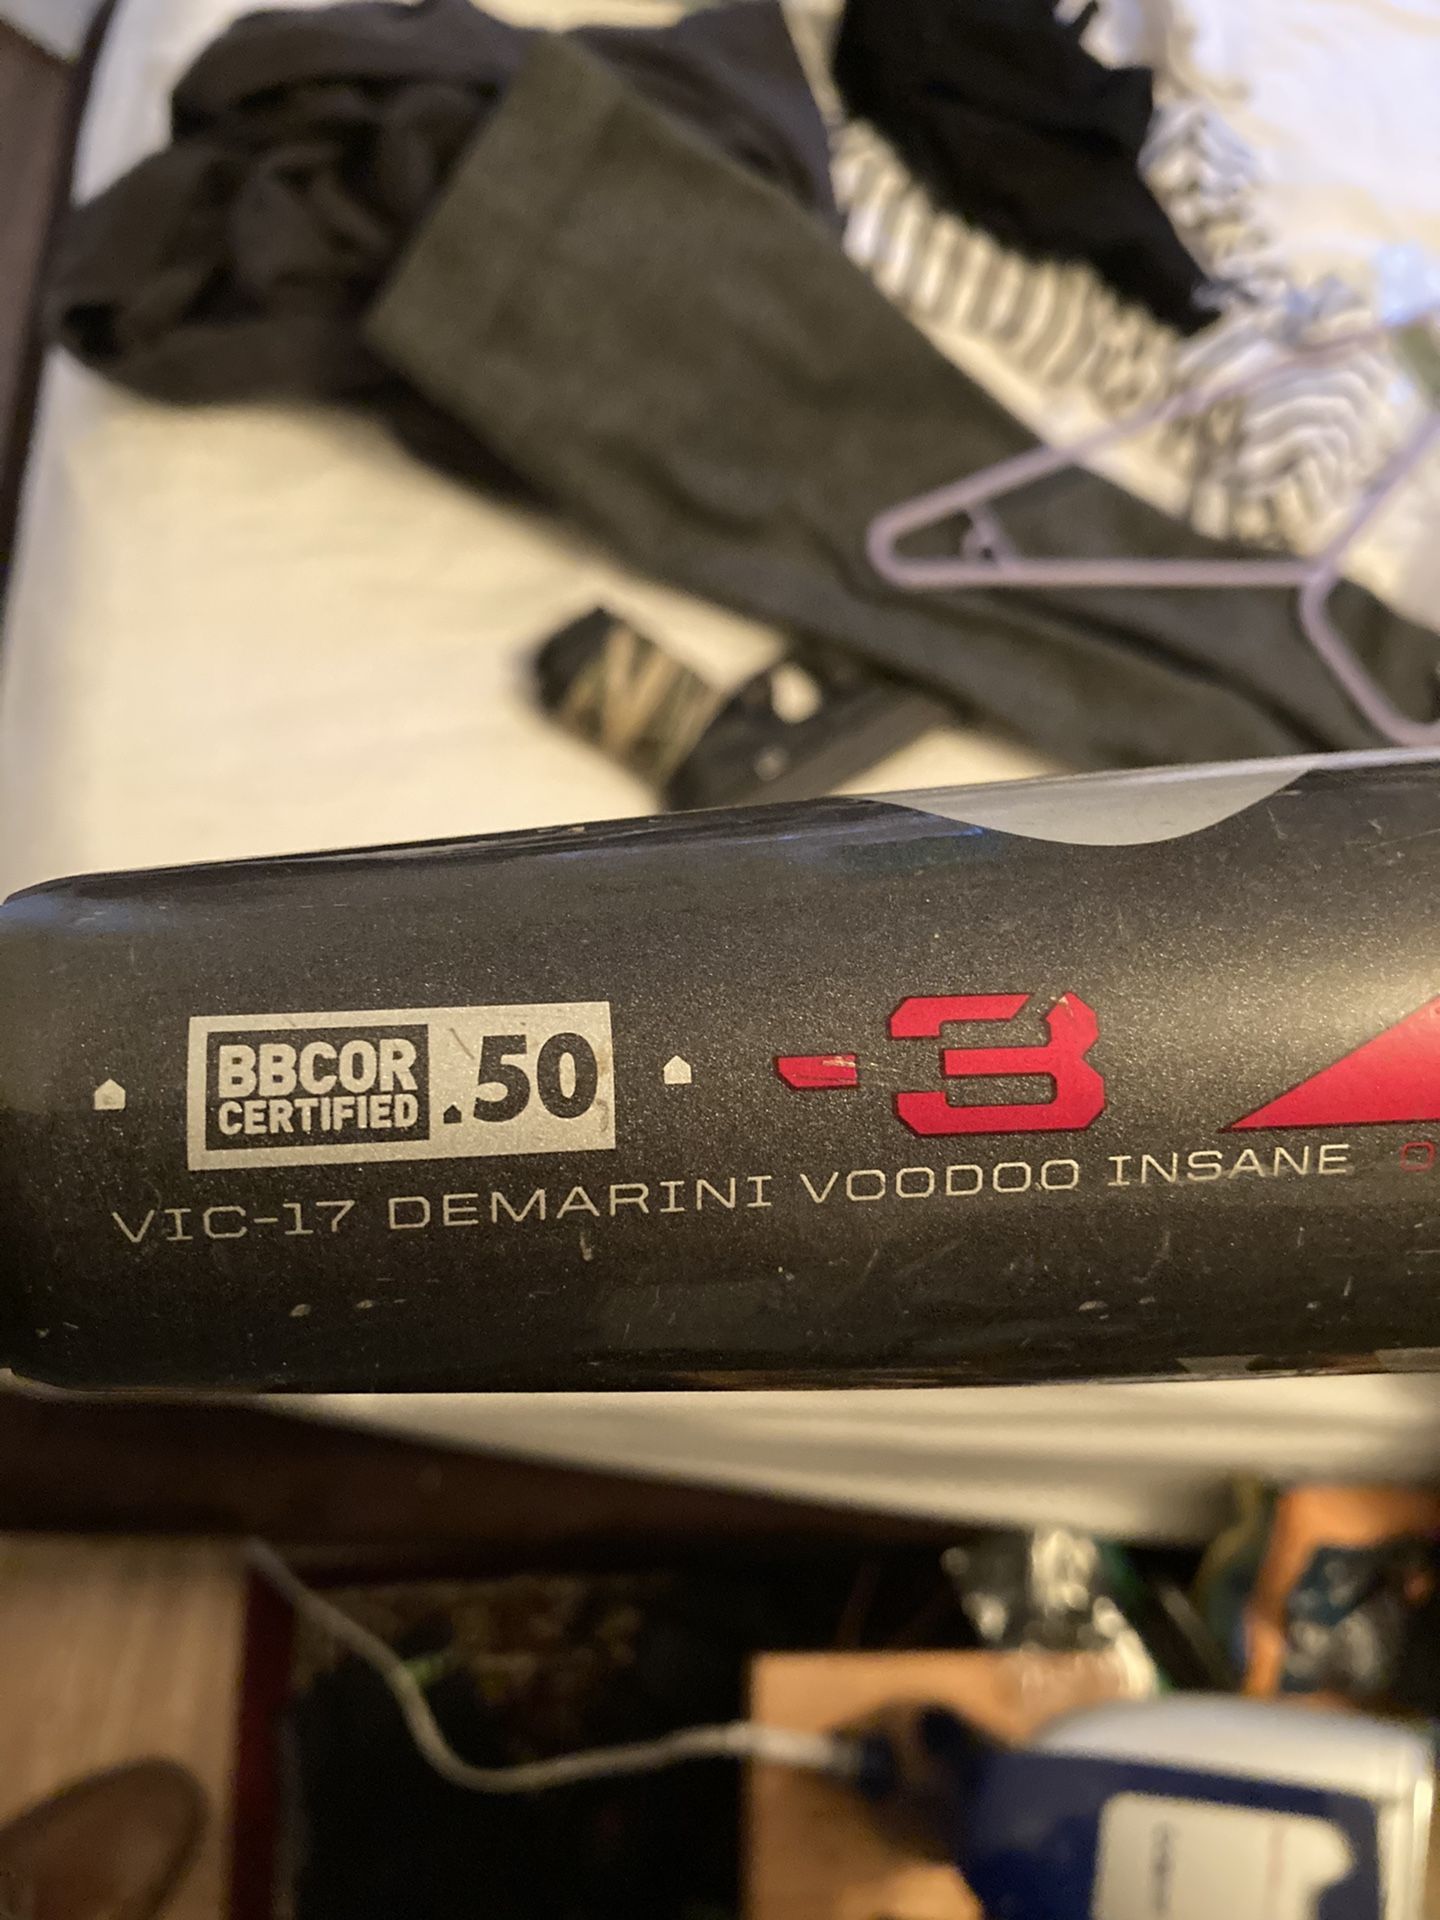 Demarini VooDoo baseball bat